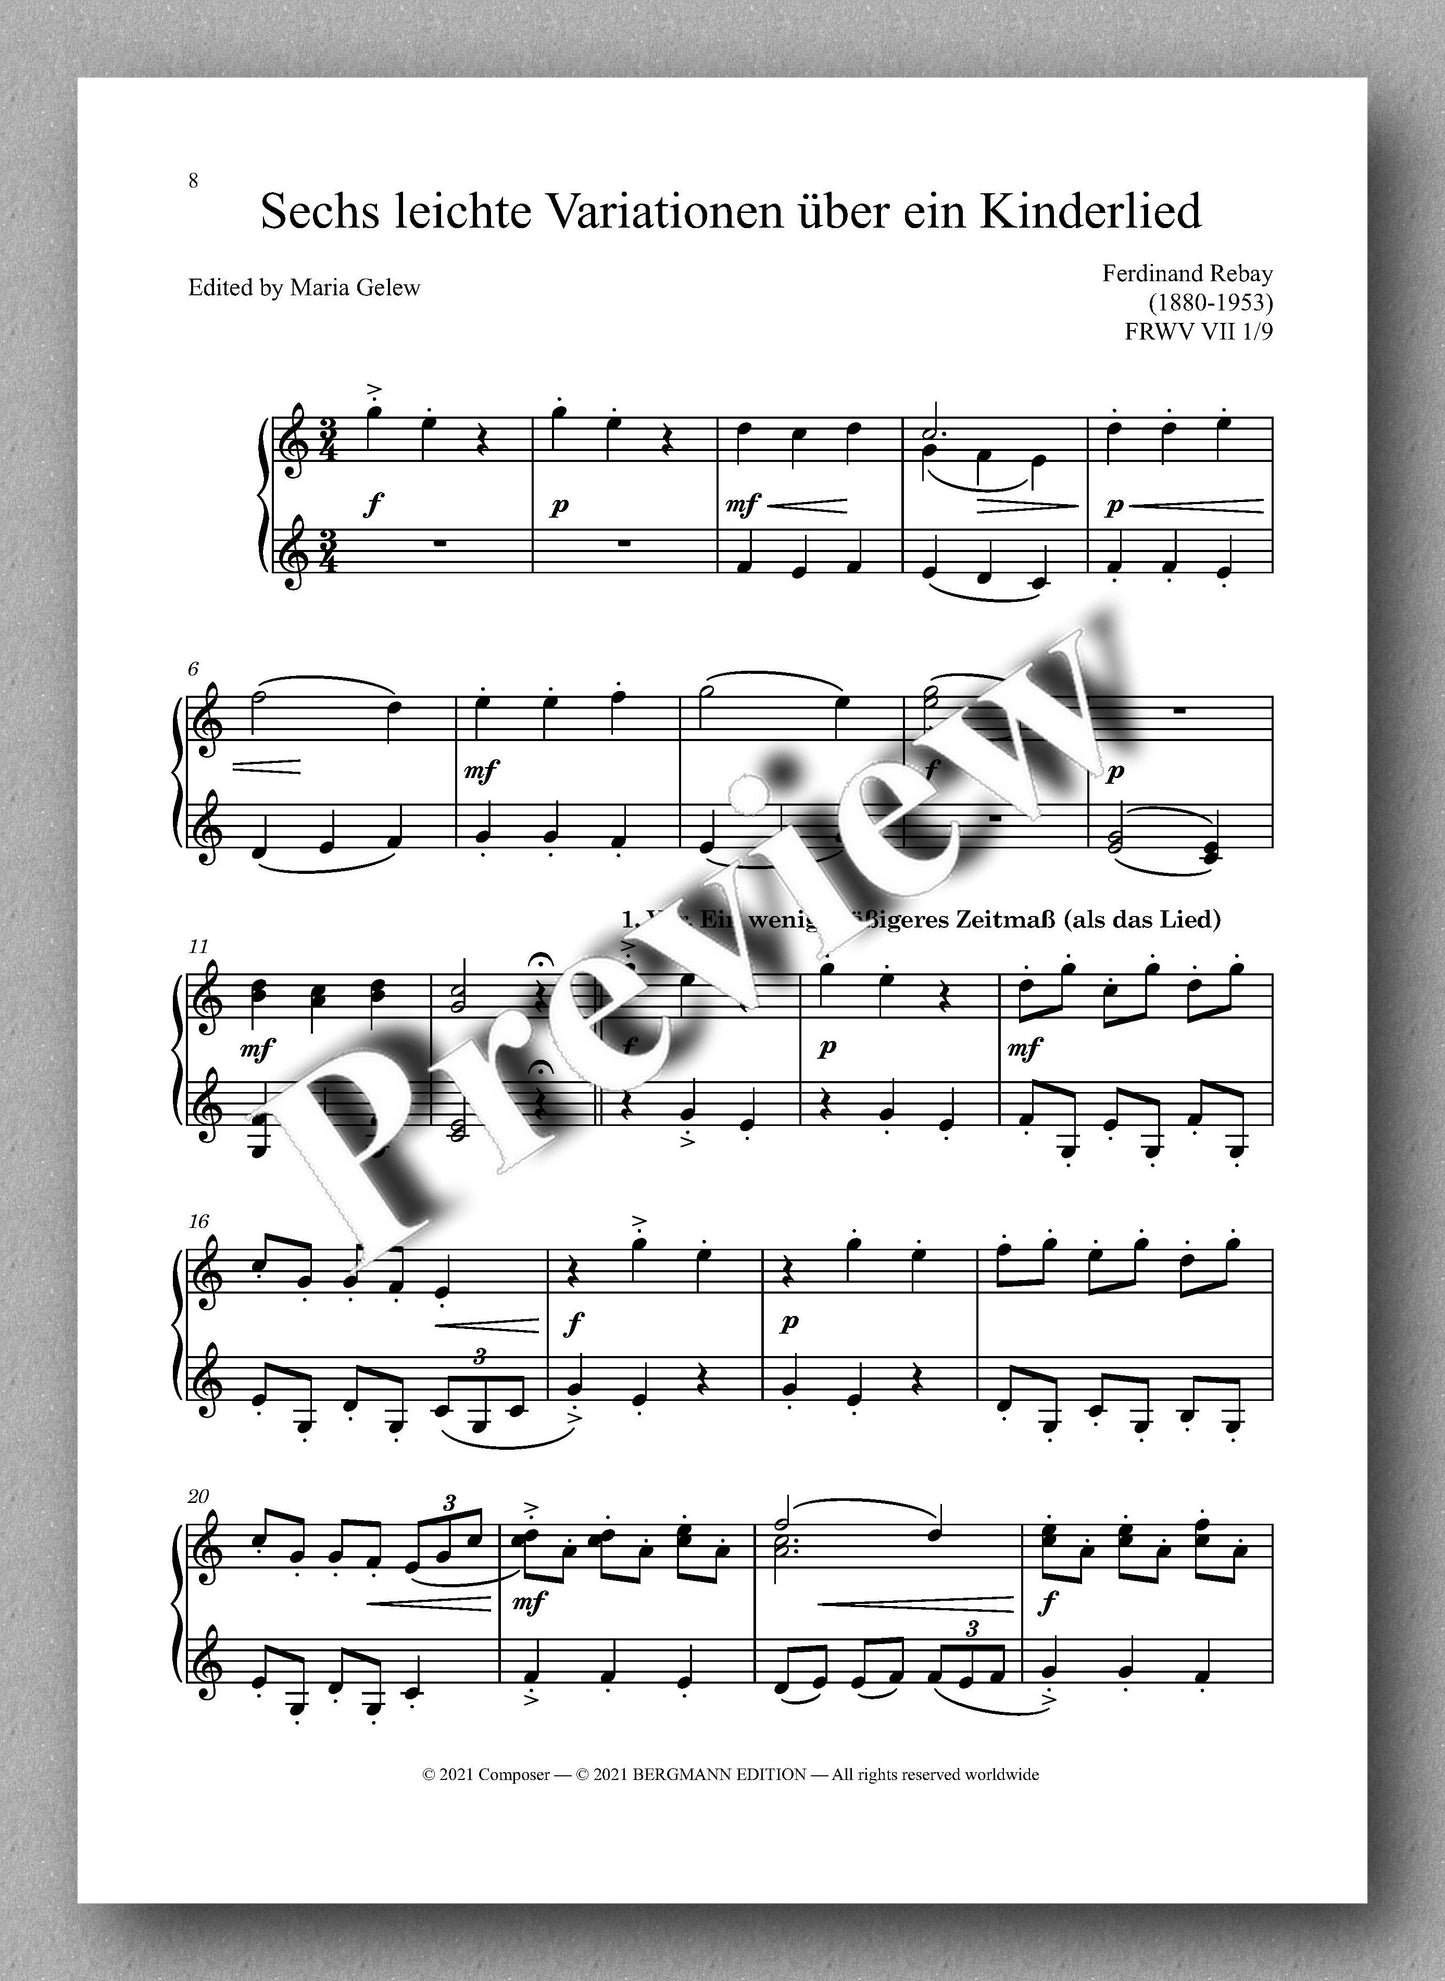 Ferdinand Rebay, Ganz kleine Variationen über “Schlaf, Kindlein, schlaf” & Sechs leichte Variationen über ein Kinderlied - music score 3